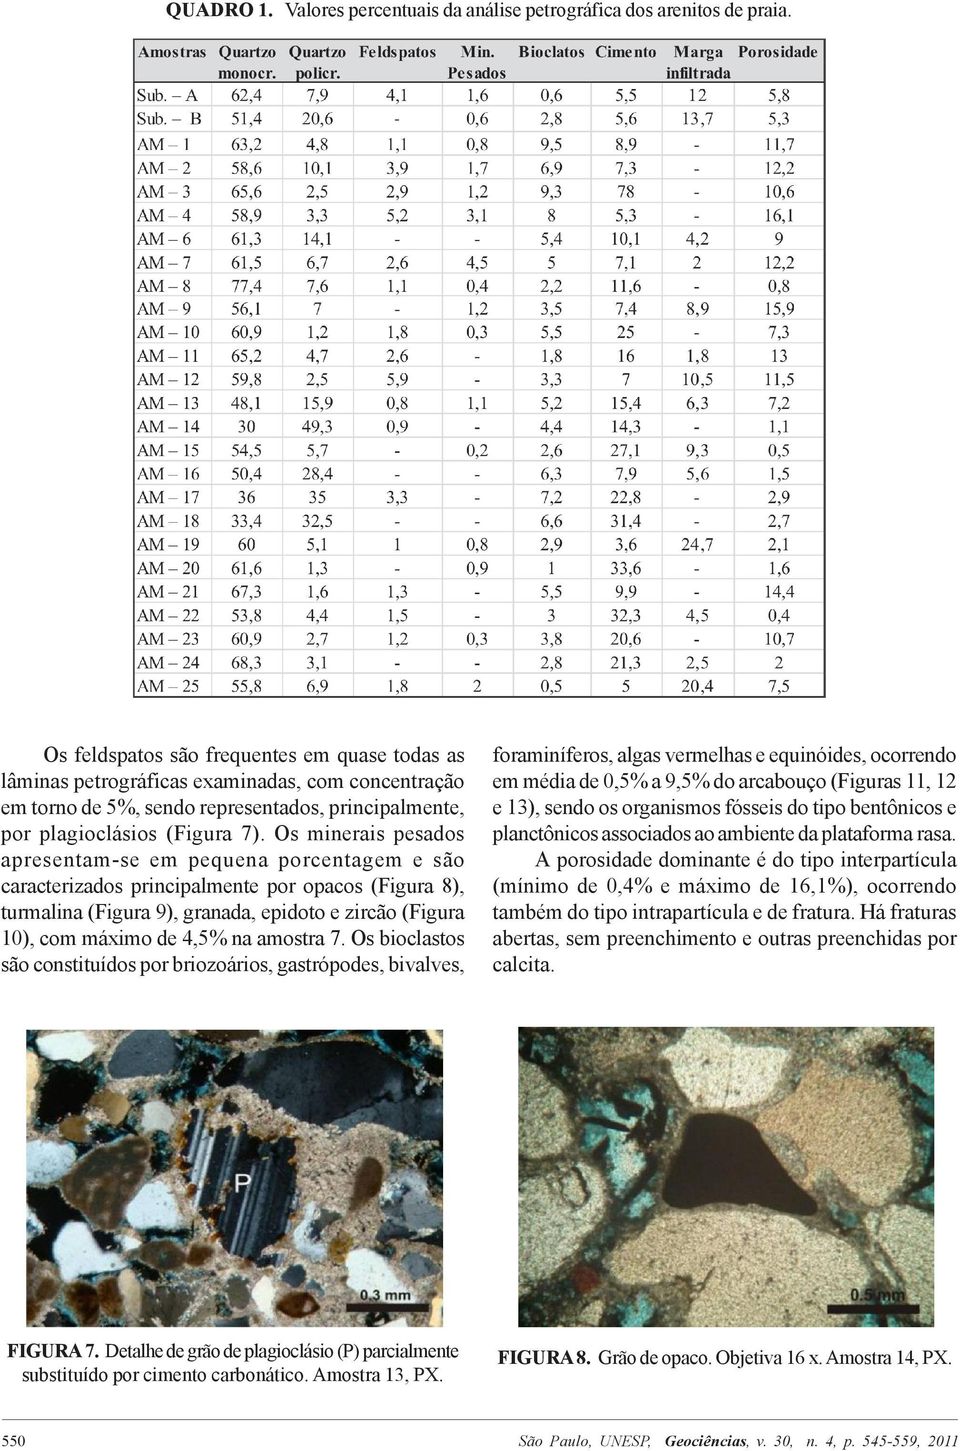 Os minerais pesados apresentam-se em pequena porcentagem e são caracterizados principalmente por opacos (Figura 8), turmalina (Figura 9), granada, epidoto e zircão (Figura 10), com máximo de 4,5% na